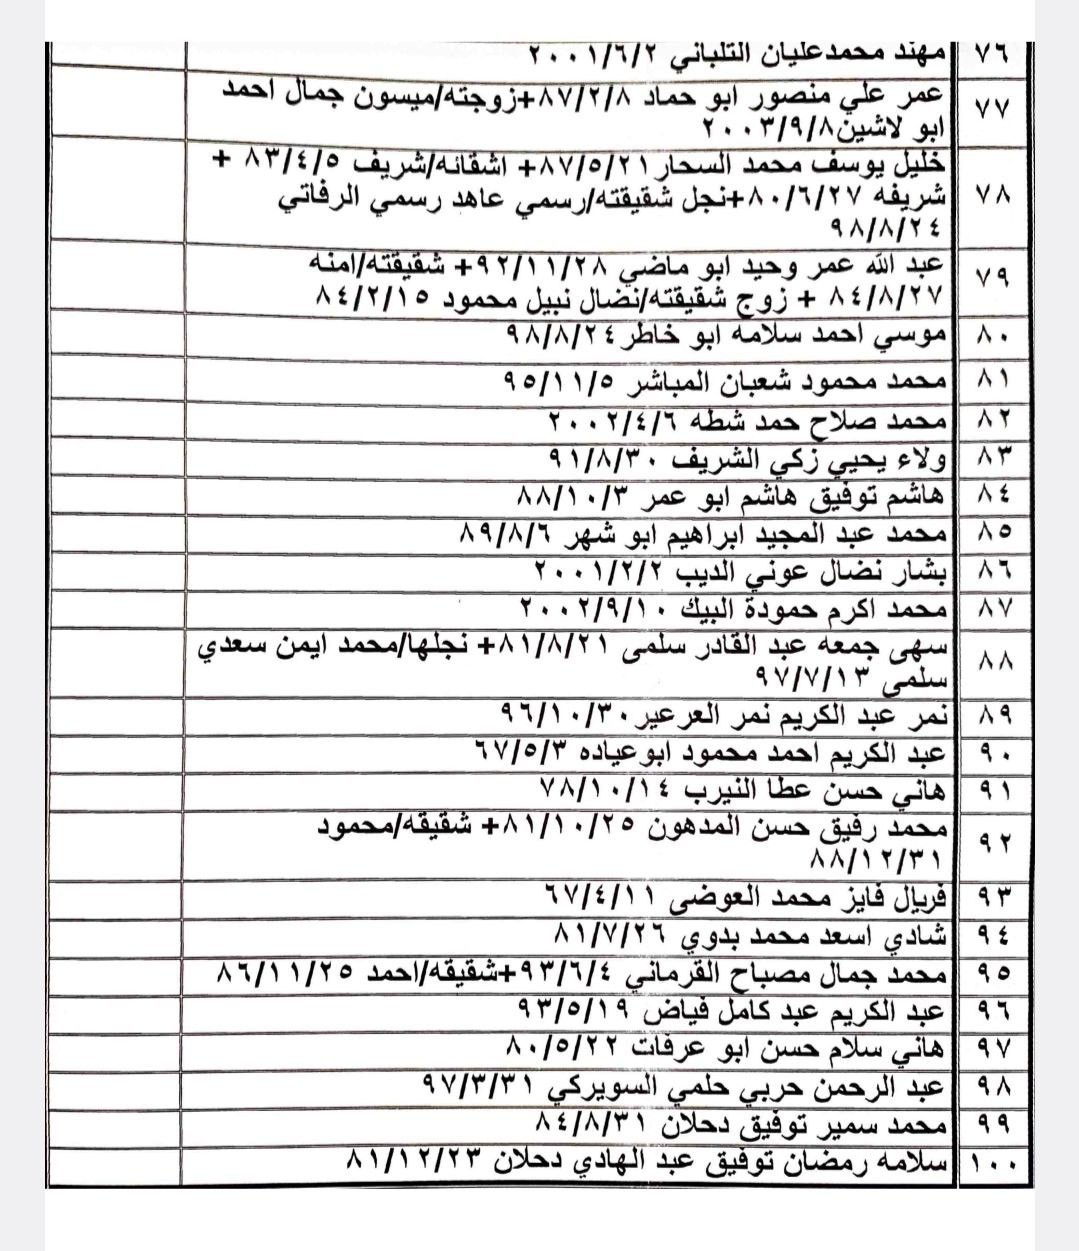 بالأسماء: كشف تنسيقات مصرية للسفر عبر معبر رفح يوم الثلاثاء 16 مايو 2023